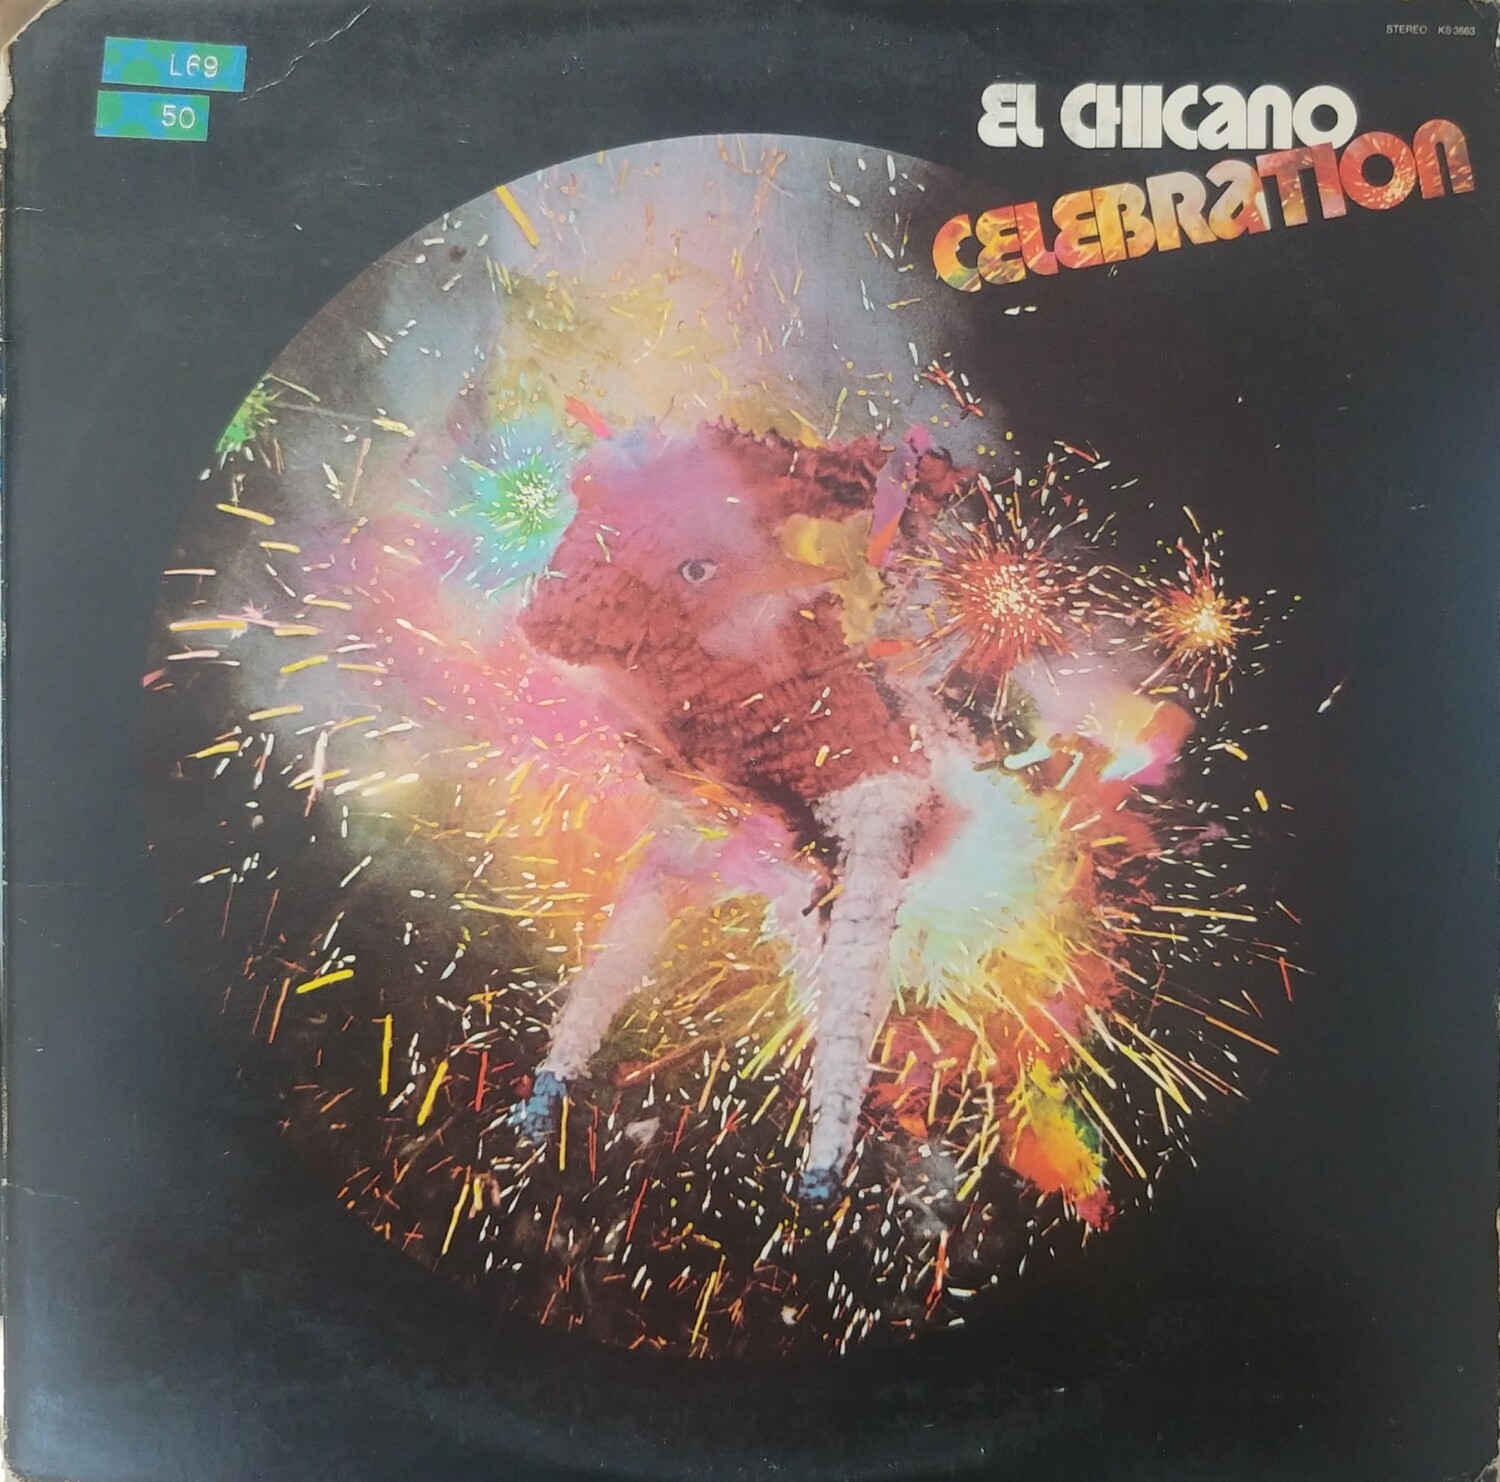 El Chicano - Celebration